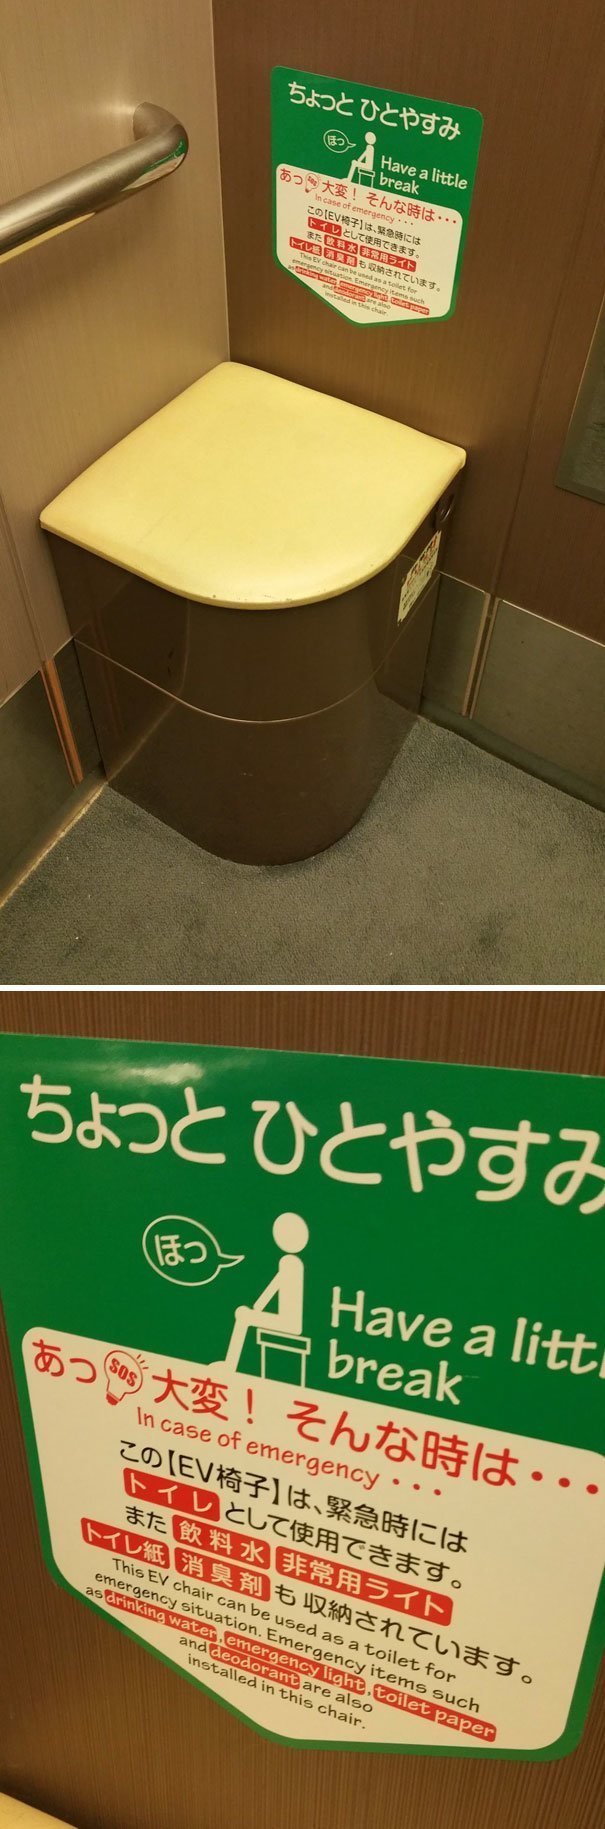 36. Сиденье в лифте, которое может быть использовано при необходимости как туалет